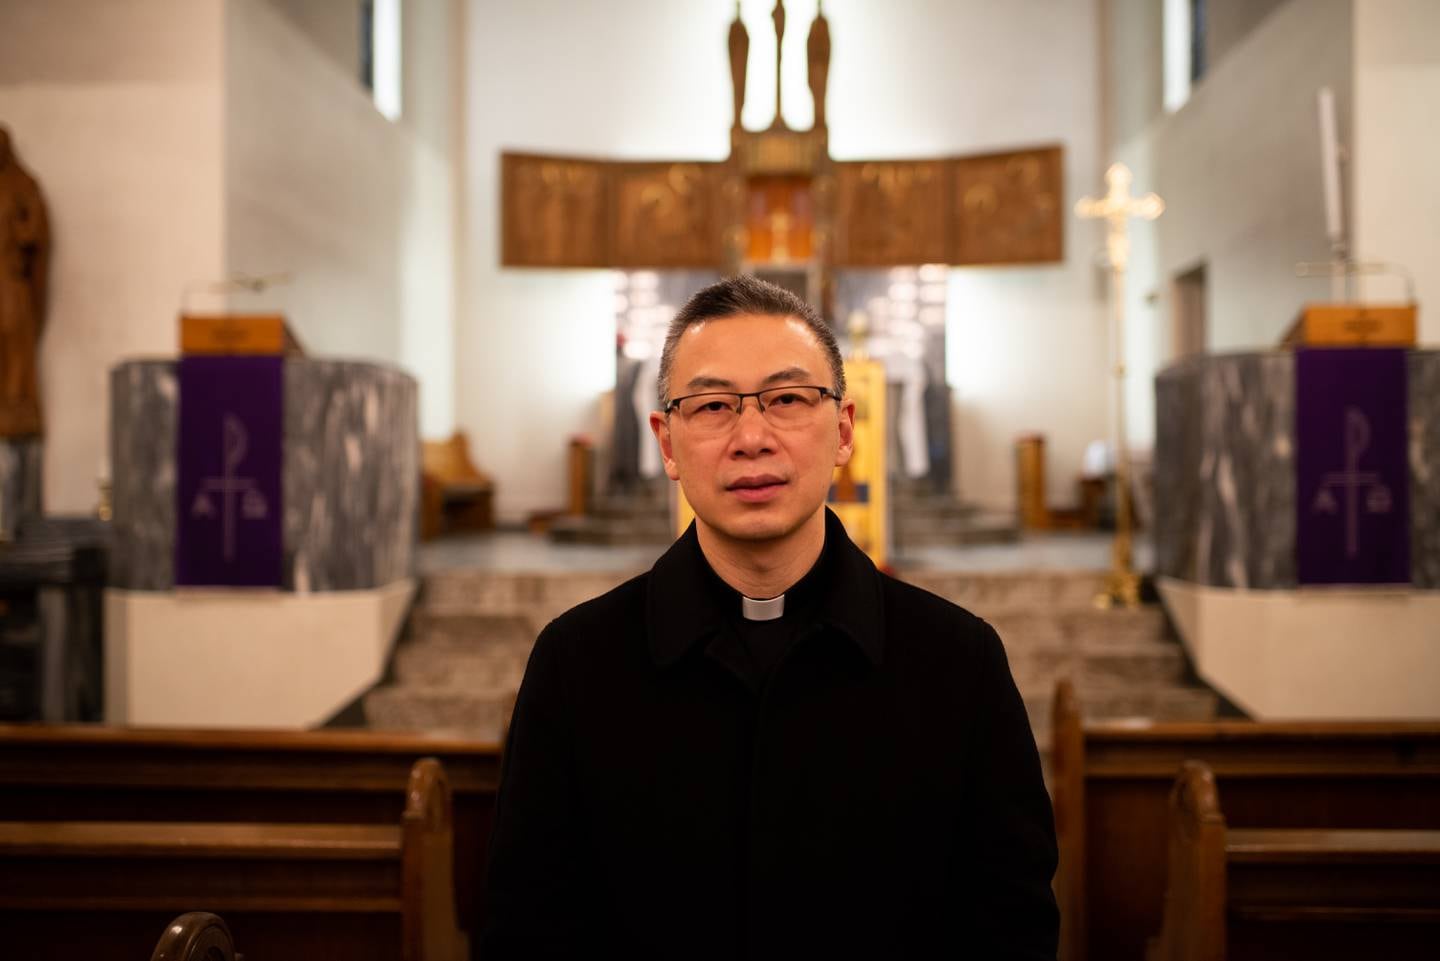 HÅPER PÅ ÅPNING: Sokneprest Carlo Borromeo Le Hong Phuc i St. Olav domkirkemenighet håper Oslo snart kan åpne for messer.